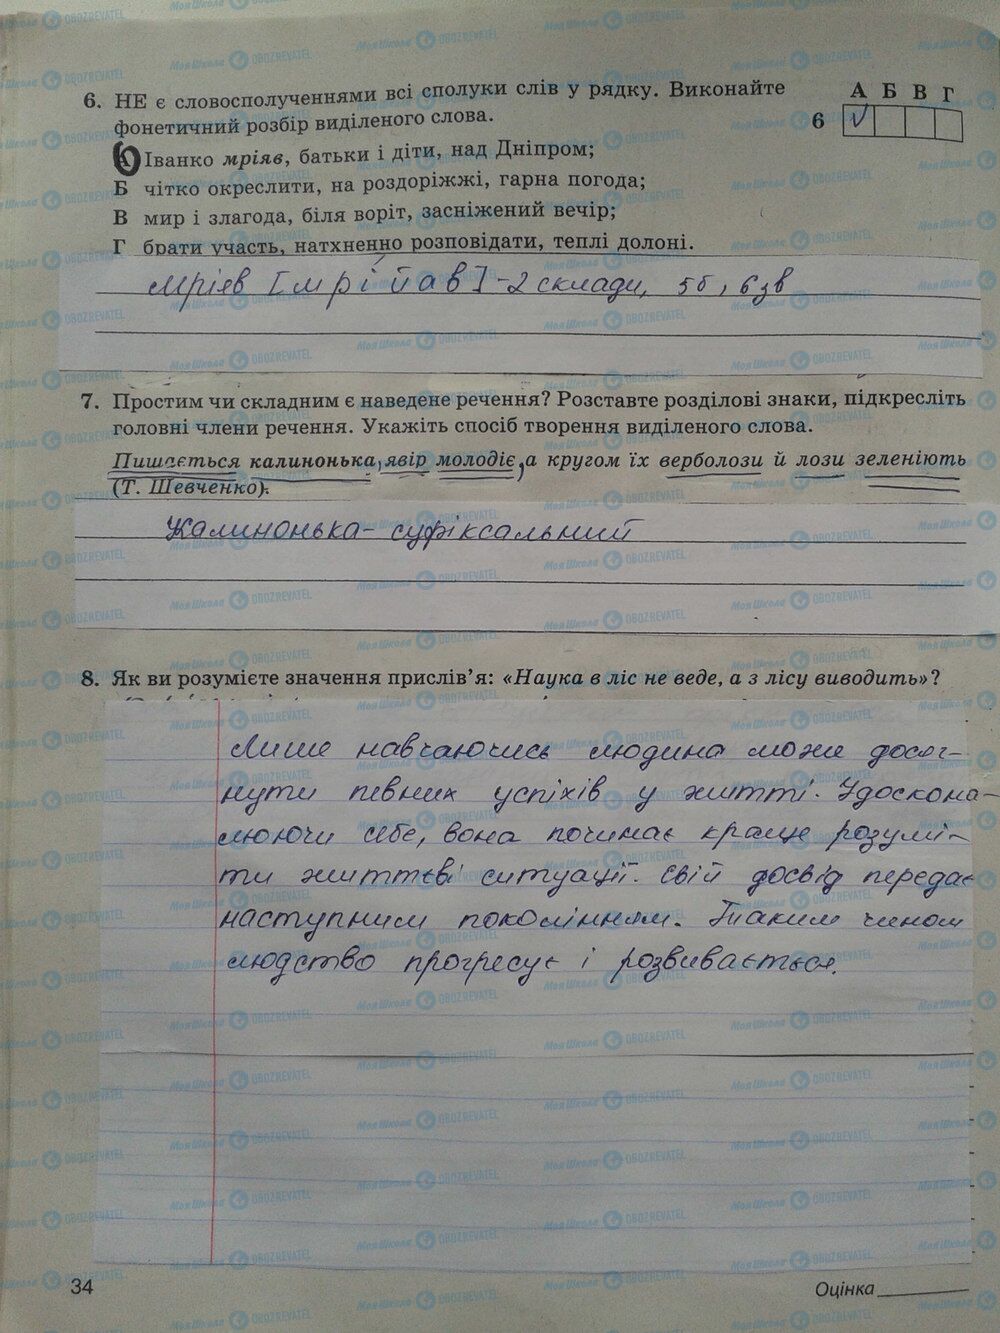 ГДЗ Укр мова 5 класс страница стр. 34